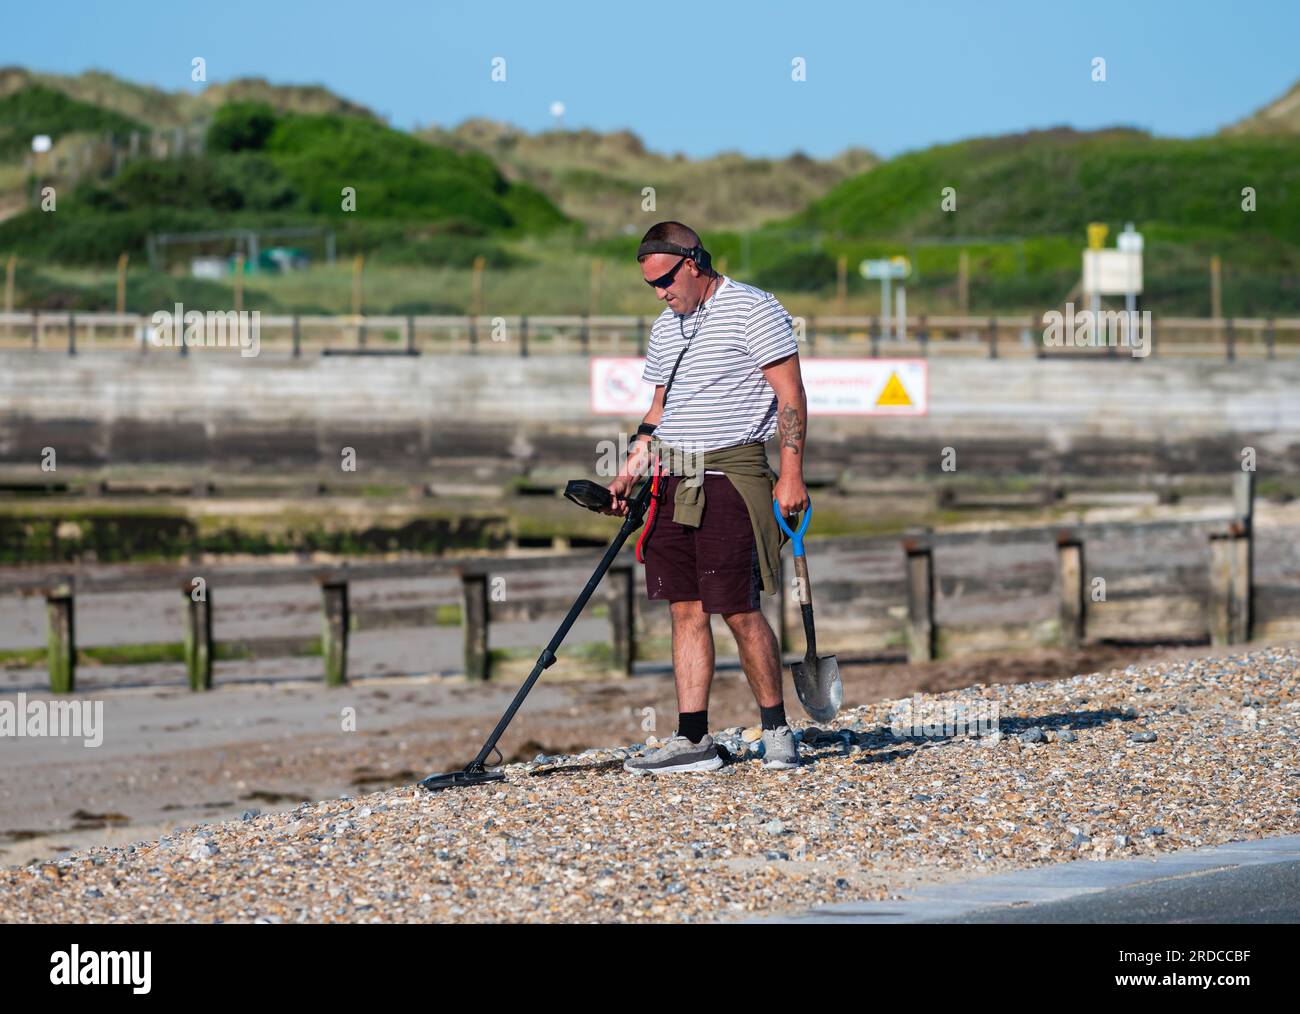 Homme sur la plage de bardeaux avec détecteur de métaux à la recherche d'objets perdus ou de valeur, au bord de la mer au Royaume-Uni. Détecteur de métaux. Banque D'Images